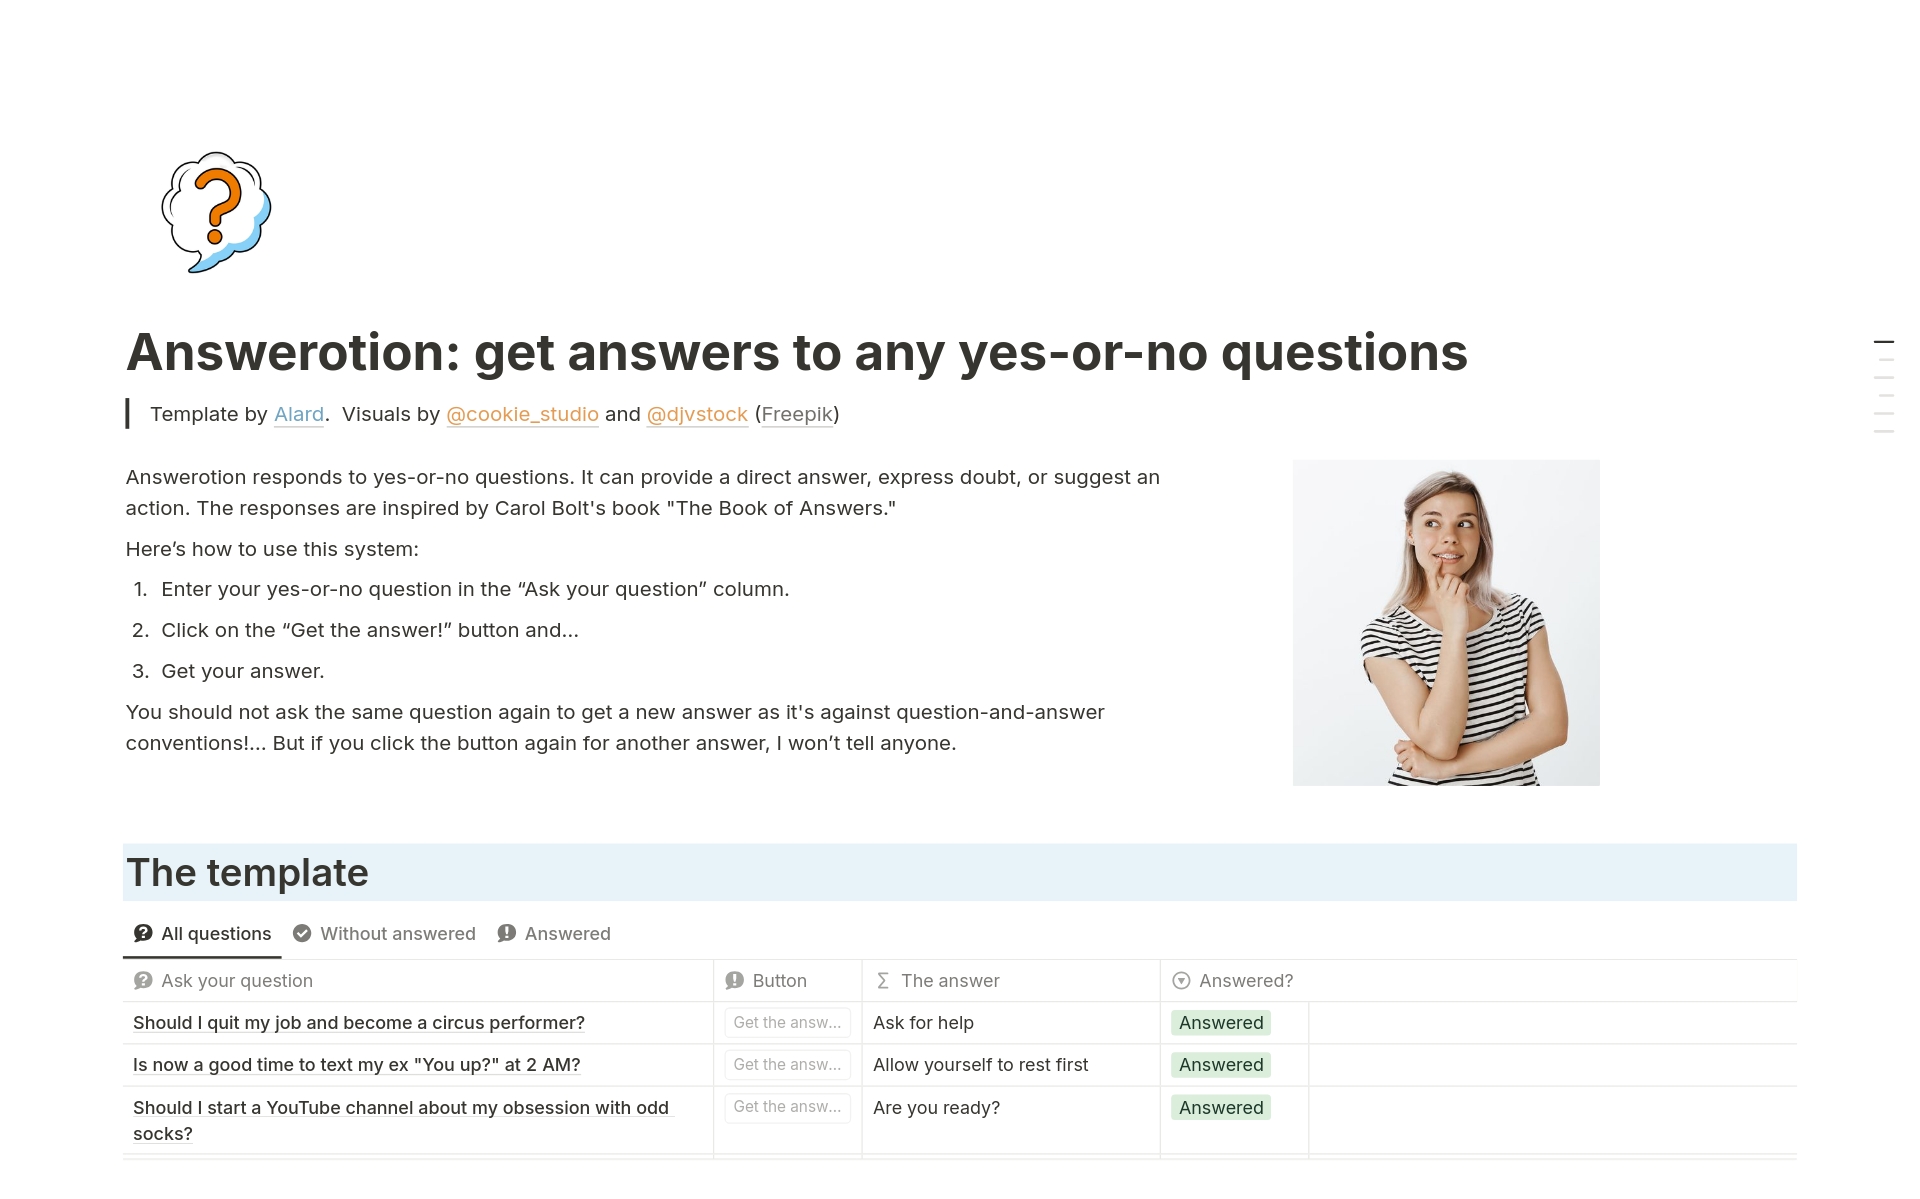 En förhandsgranskning av mallen för Answerotion: get answers to yes-or-no questions